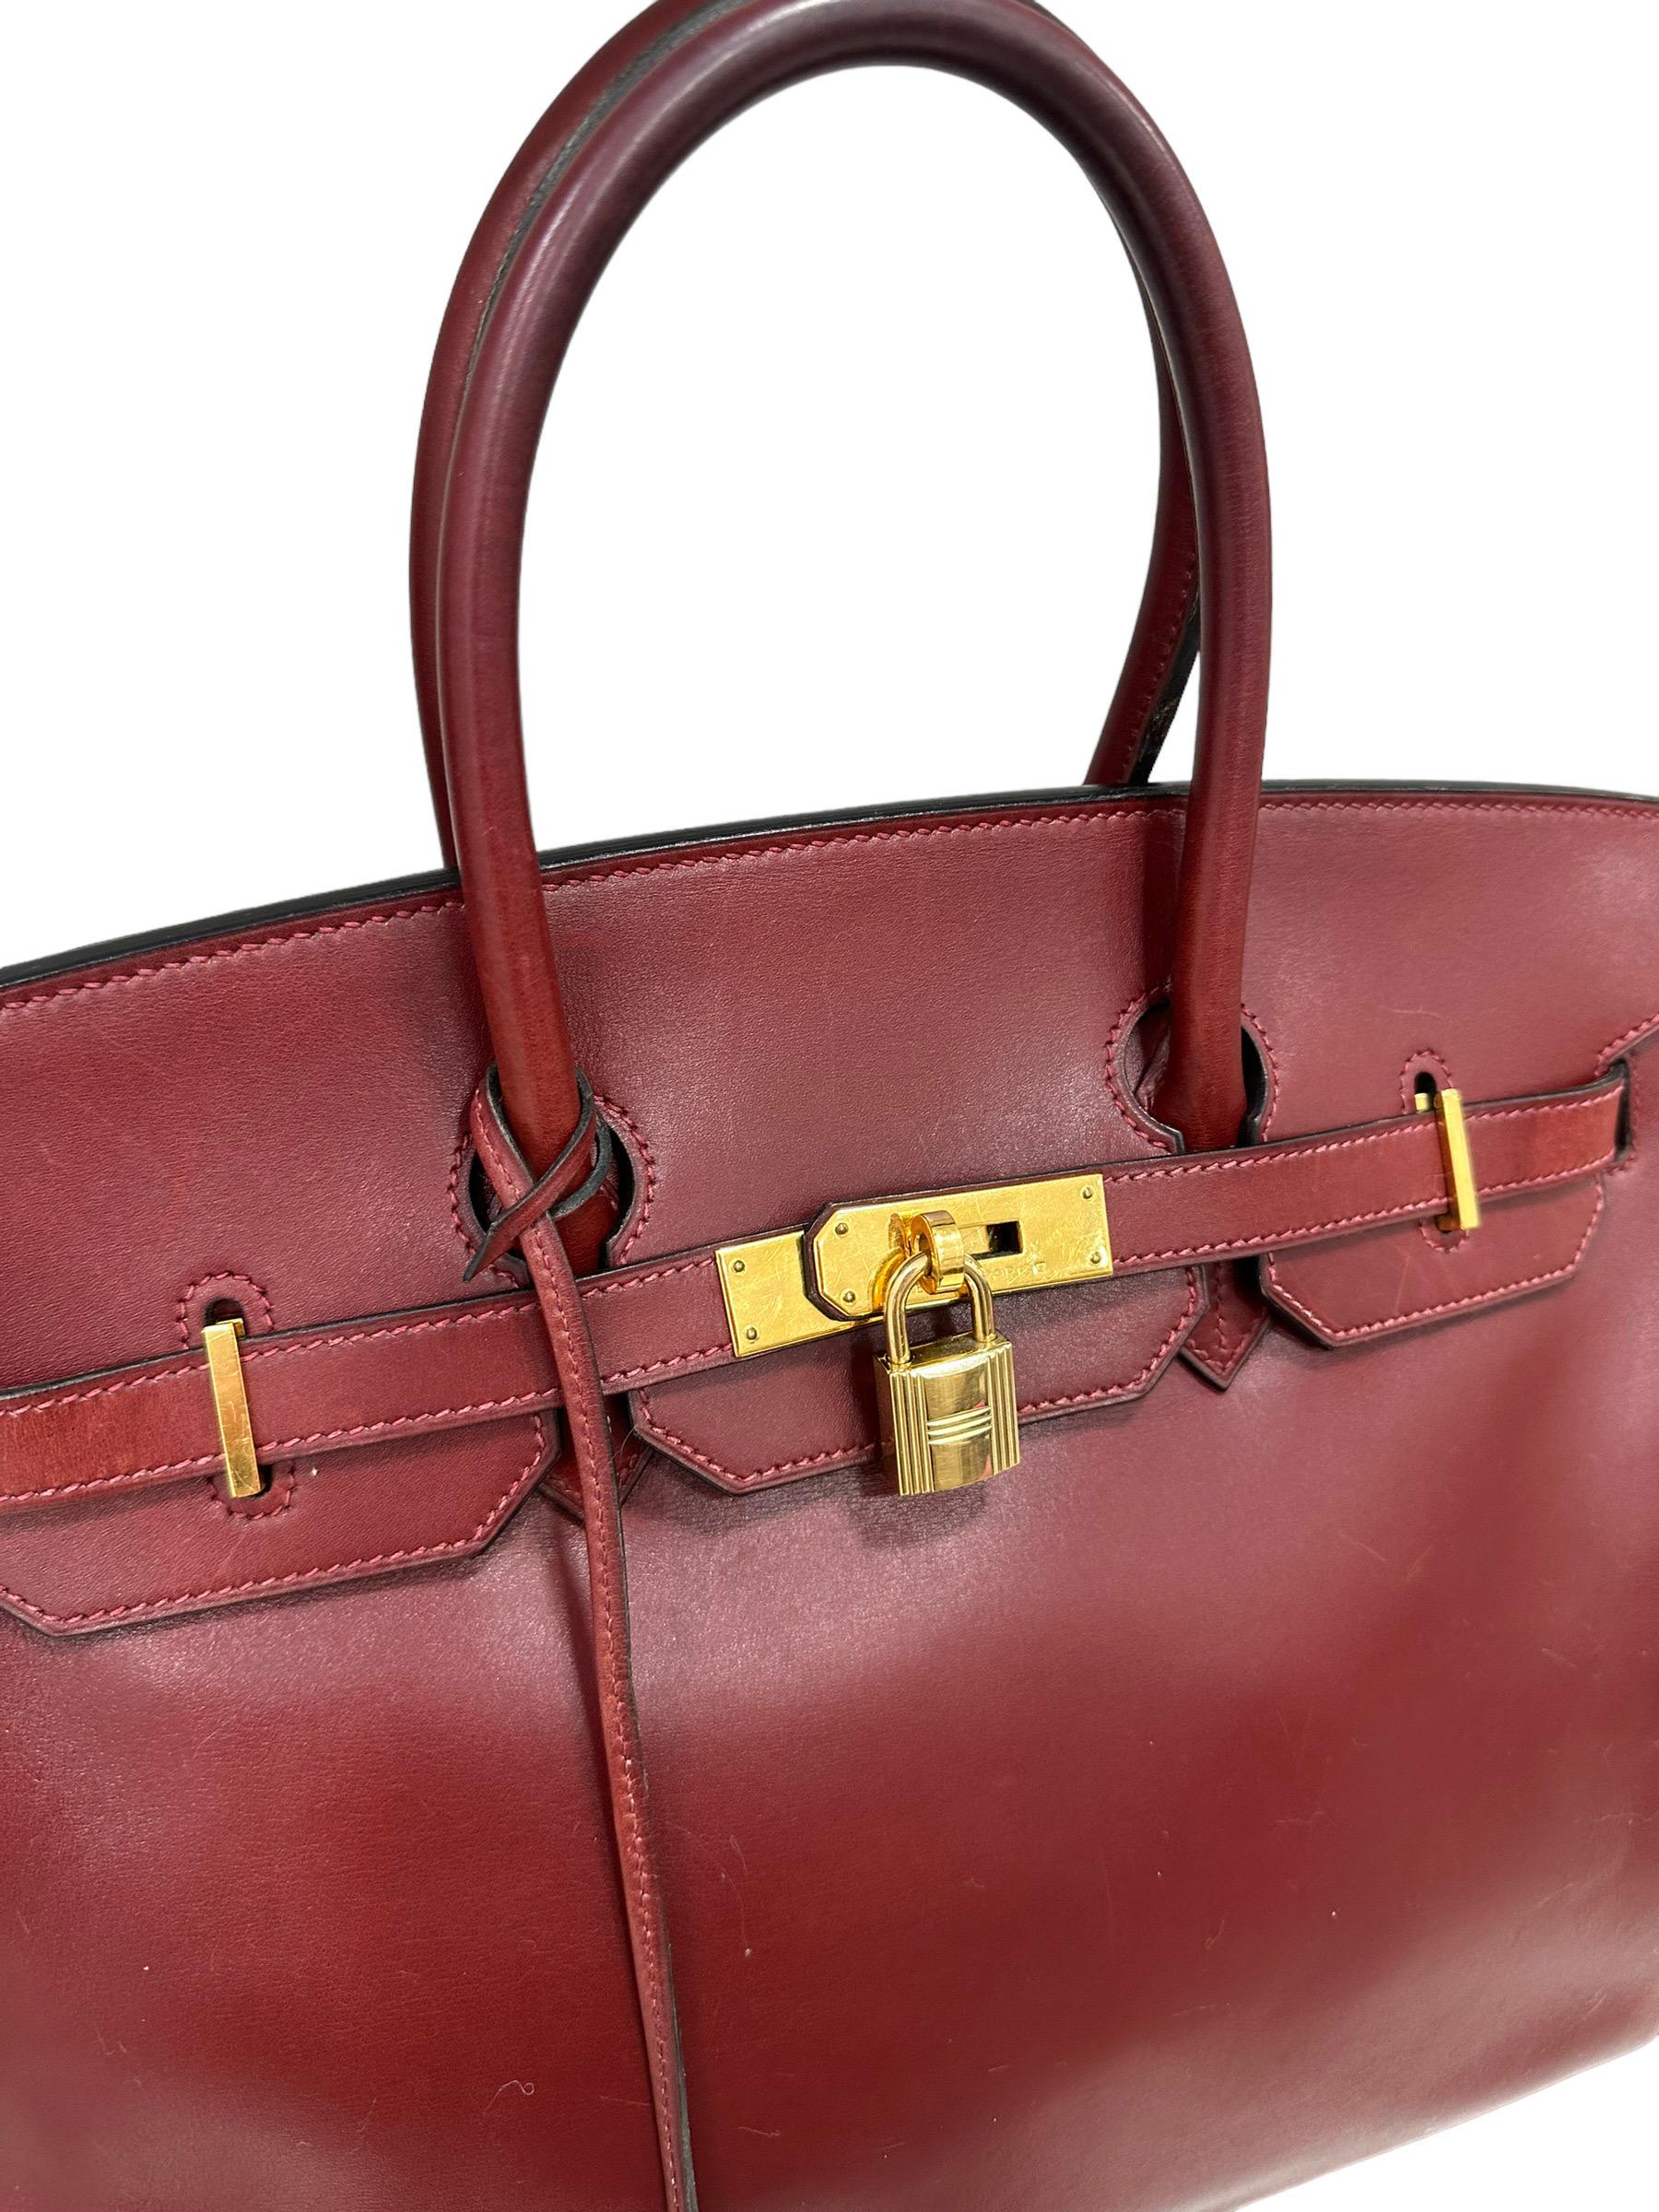 Women's Hermès Birkin 35 Evercalf Rouge Garance Top Handle Bag